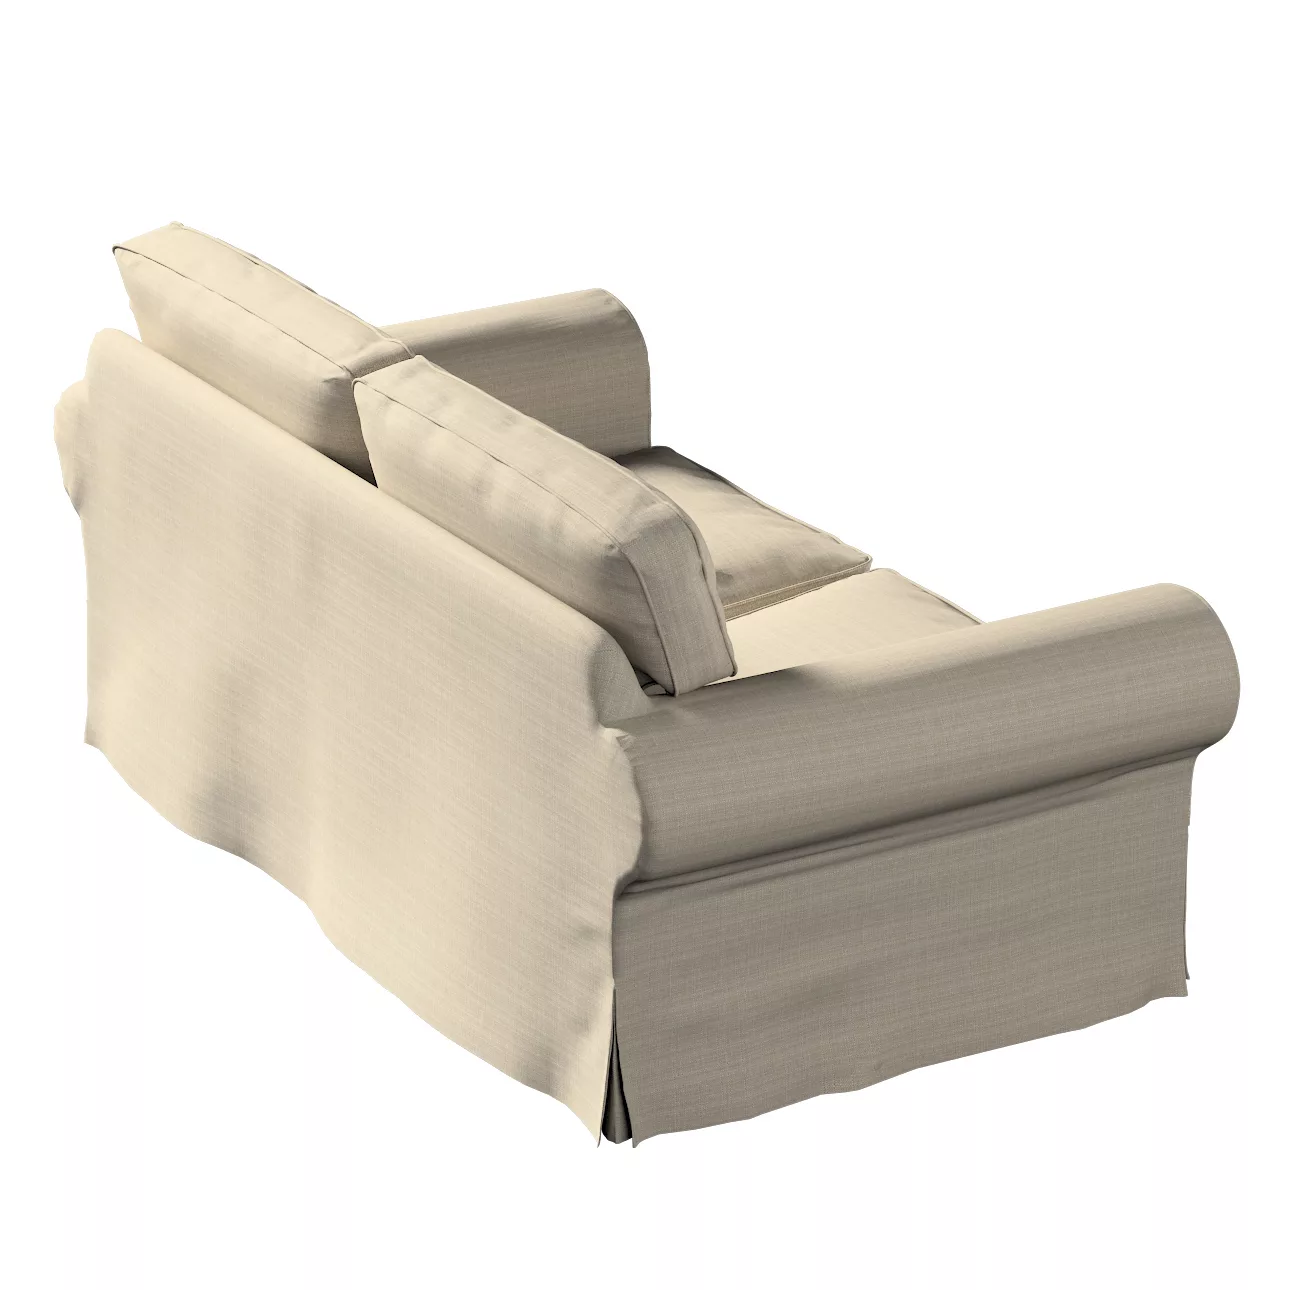 Bezug für Ektorp 2-Sitzer Schlafsofa NEUES Modell, beige, Sofabezug für  Ek günstig online kaufen